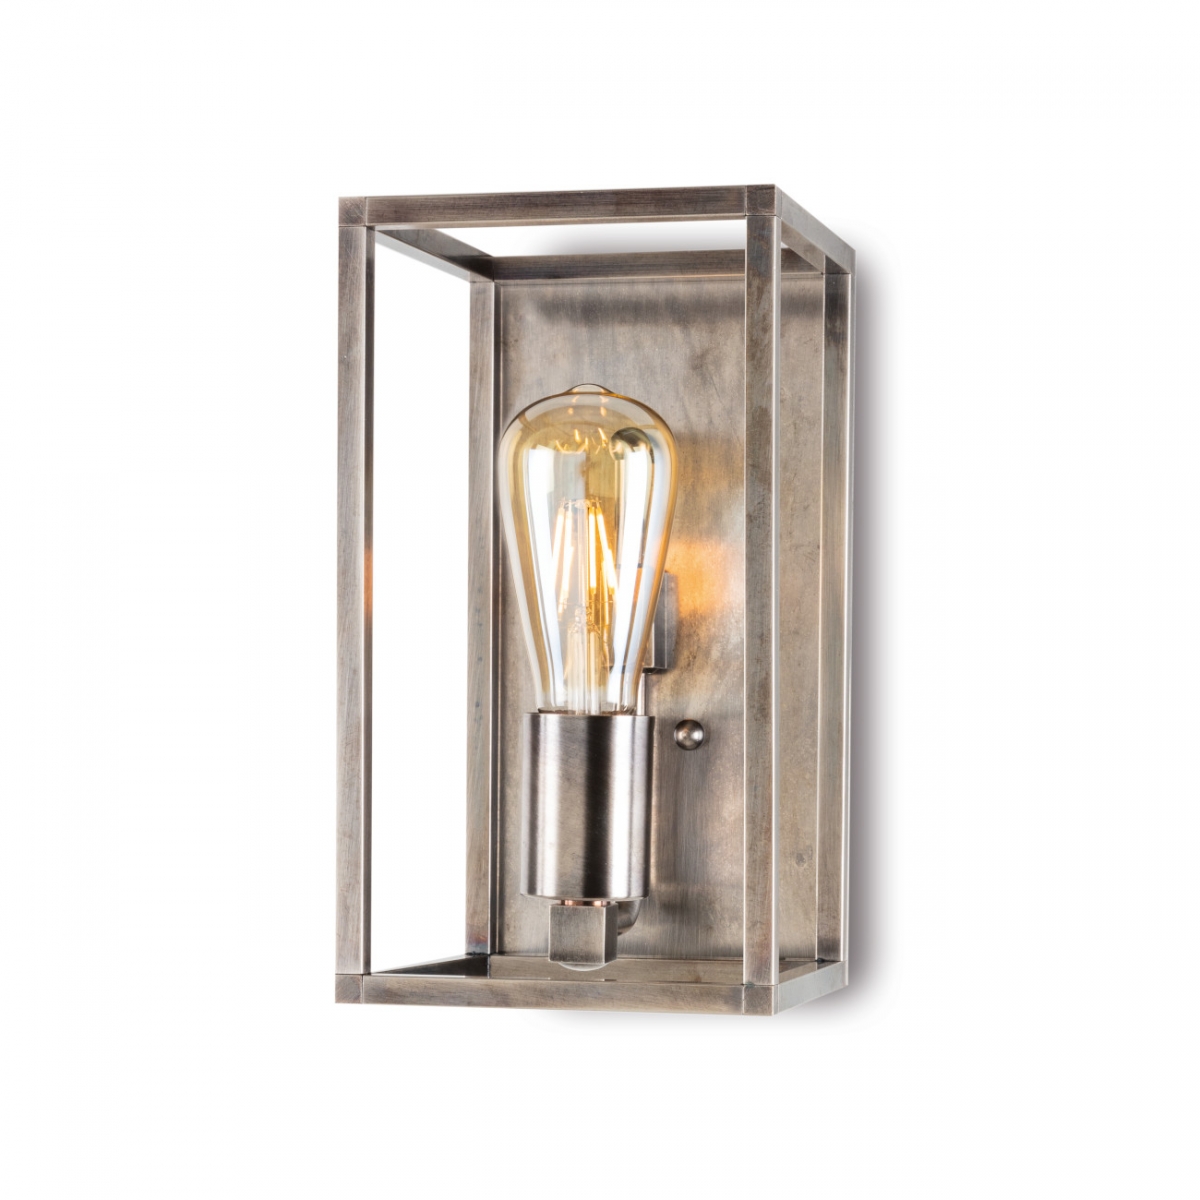 verstellbare Wandlampe aus Metall in Schwarz//Chrom moderner Wandspot mit Gitter 1-flammig 1 x E14-Fassung max Wandleuchte Burkal für LED Leuchtmittel geeignet 40 Watt